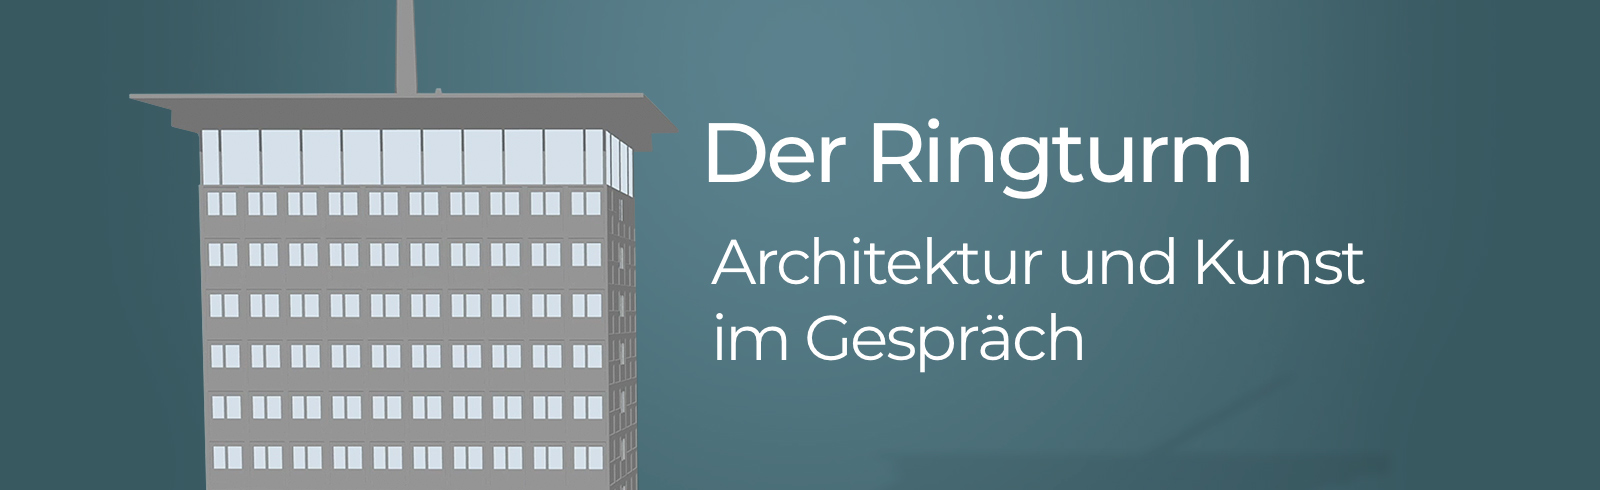 Der Ringturm, Architektur und Kunst im Gespräch